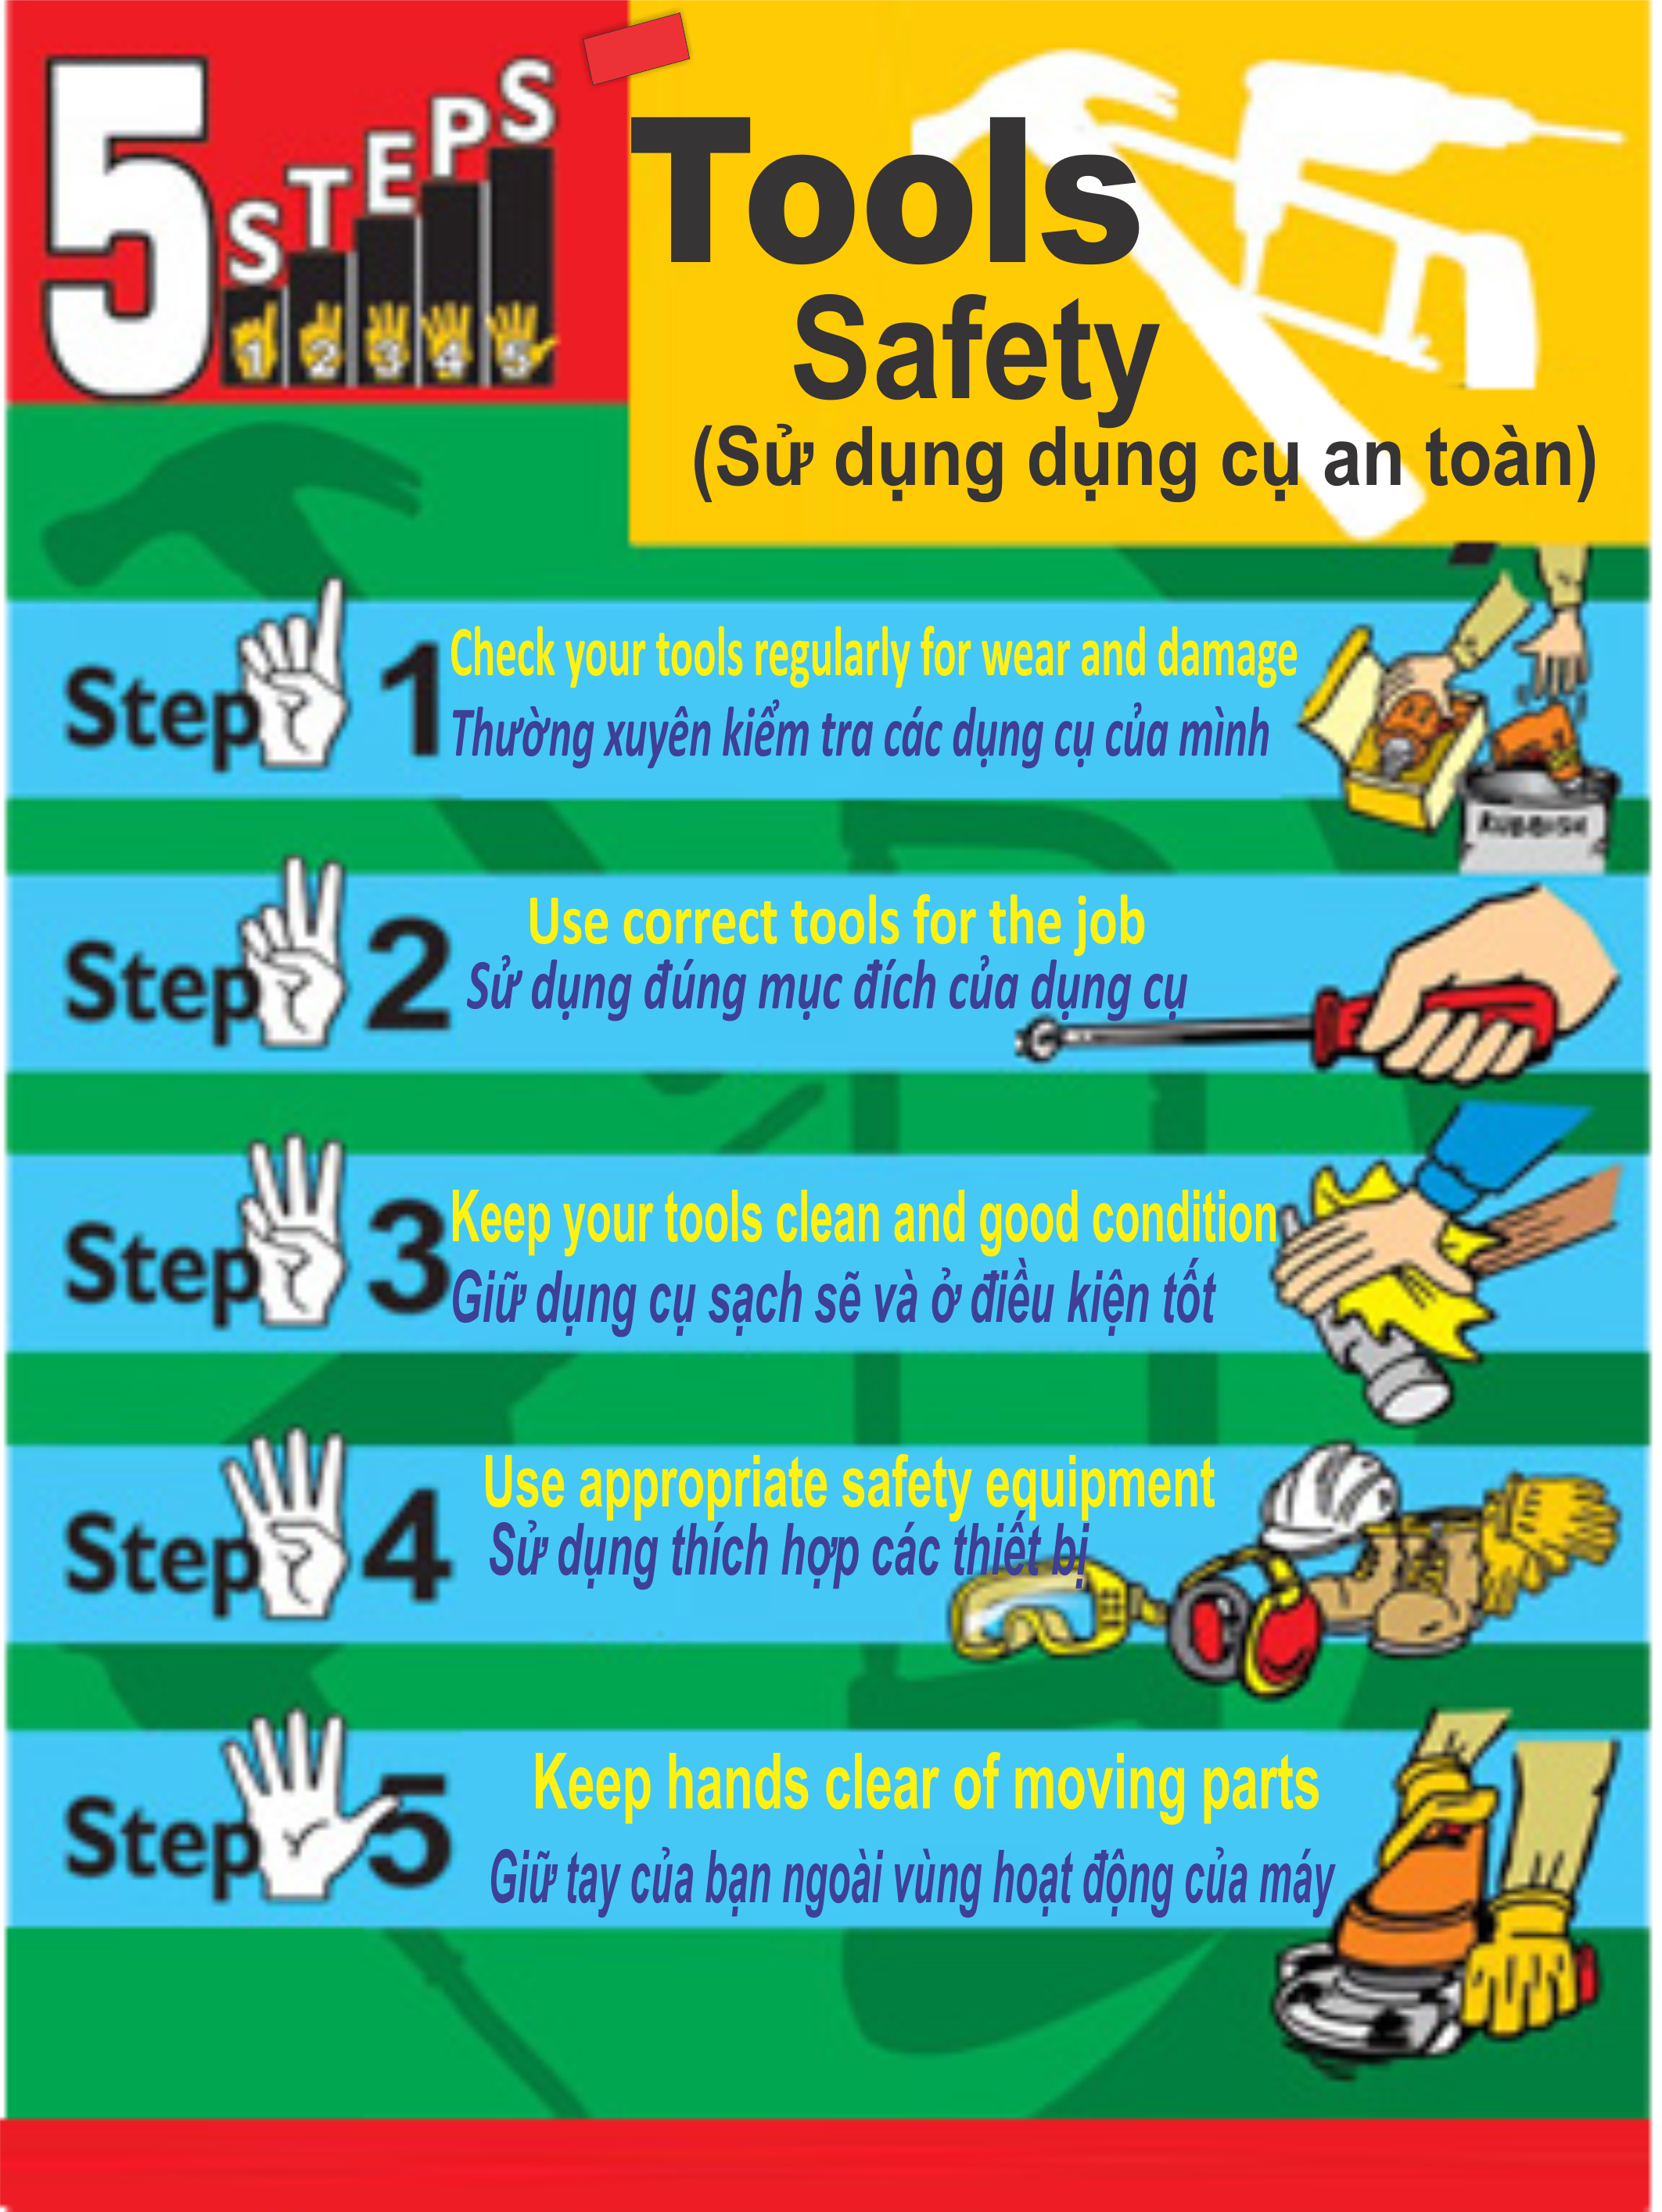 5 nguyên tắc an toàn cơ bản khi làm việc với các công cụ cầm tay